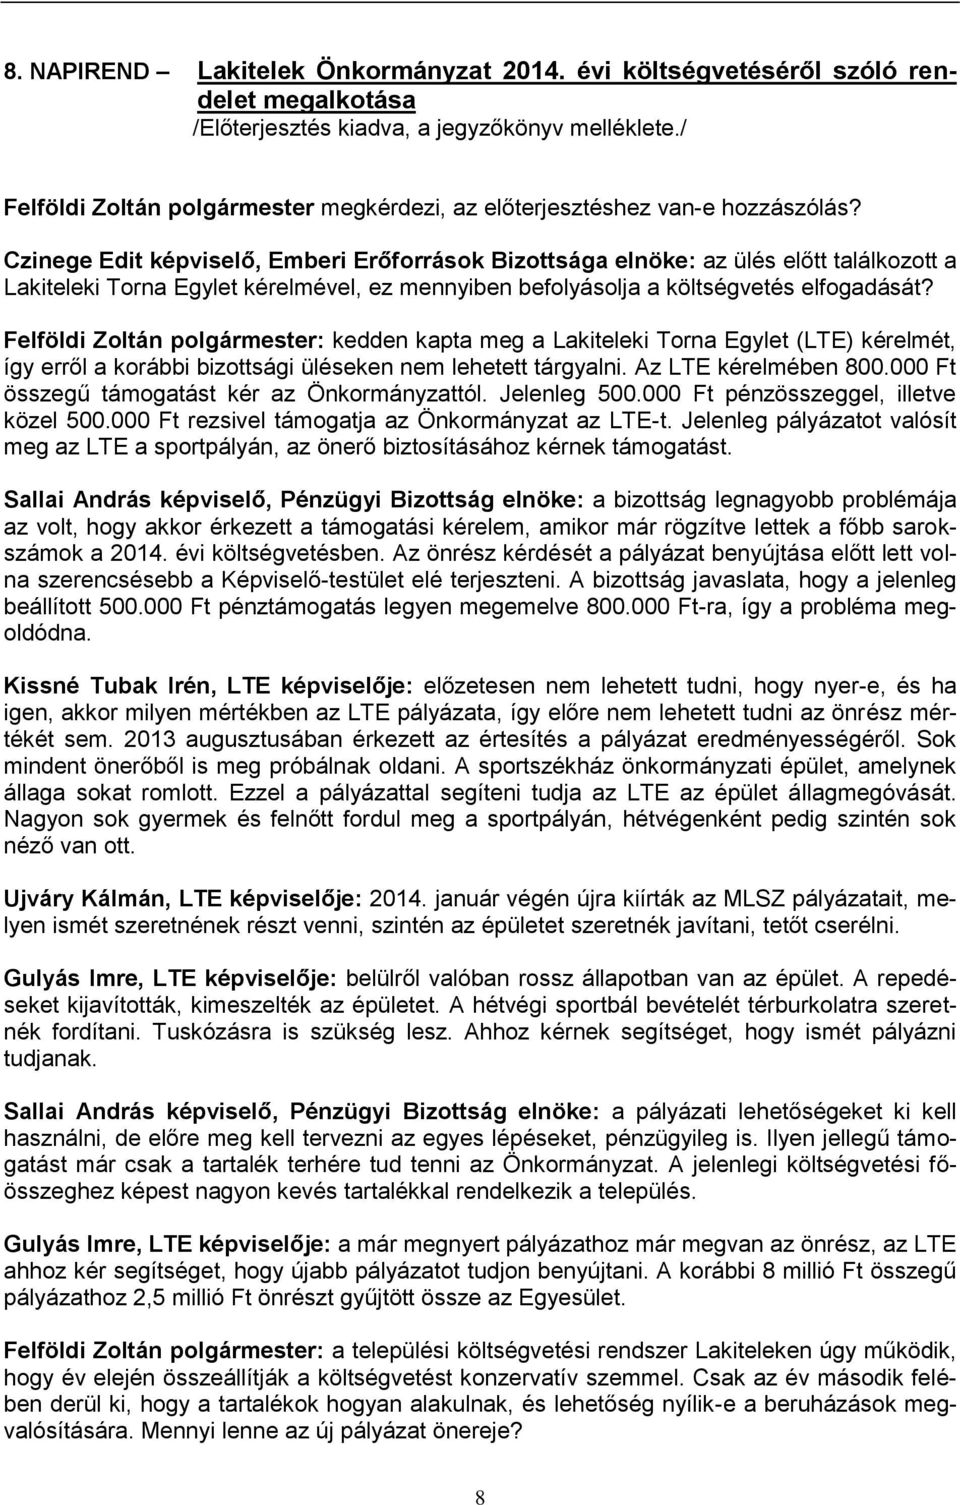 Felföldi Zoltán polgármester: kedden kapta meg a Lakiteleki Torna Egylet (LTE) kérelmét, így erről a korábbi bizottsági üléseken nem lehetett tárgyalni. Az LTE kérelmében 800.